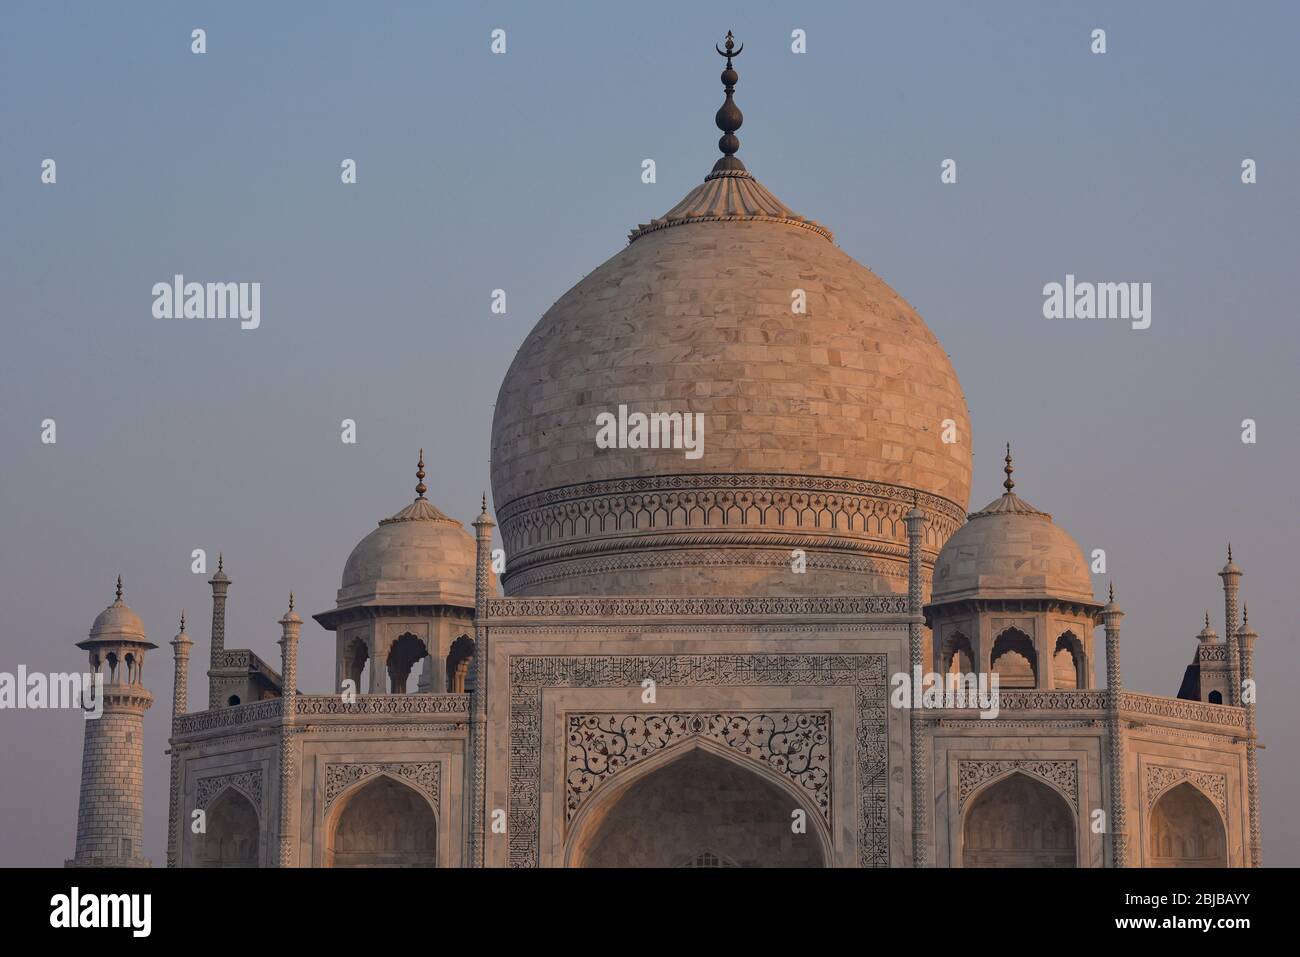 Amanecer en el hermoso, blanco-marfil, mármol Taj Mahal. Los 44 metros de cúpula principal está coronada con un finial de latón. Agra, India, Asia Central. Foto de stock